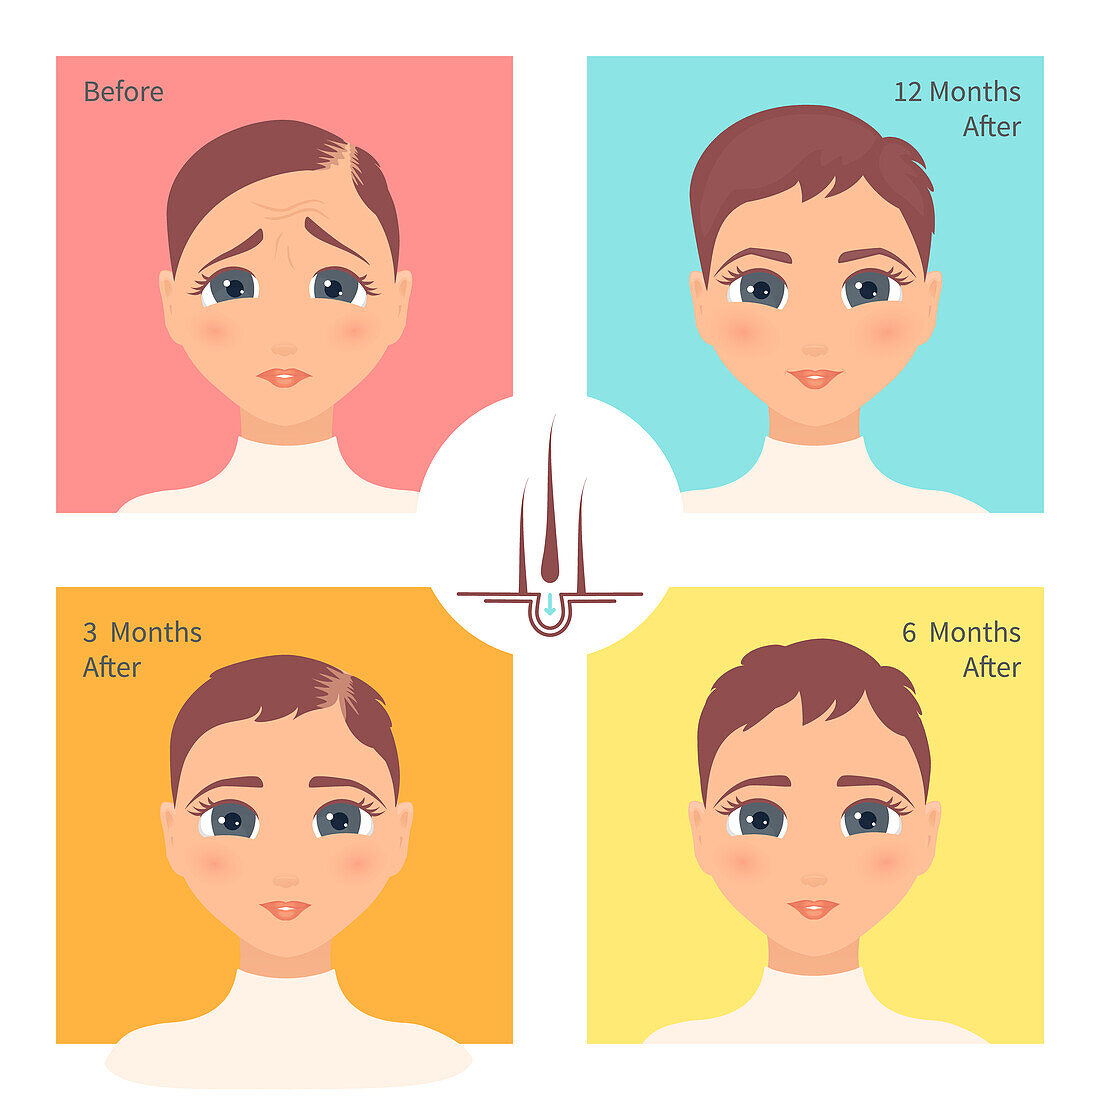 Hair transplantation surgery result in women, illustration